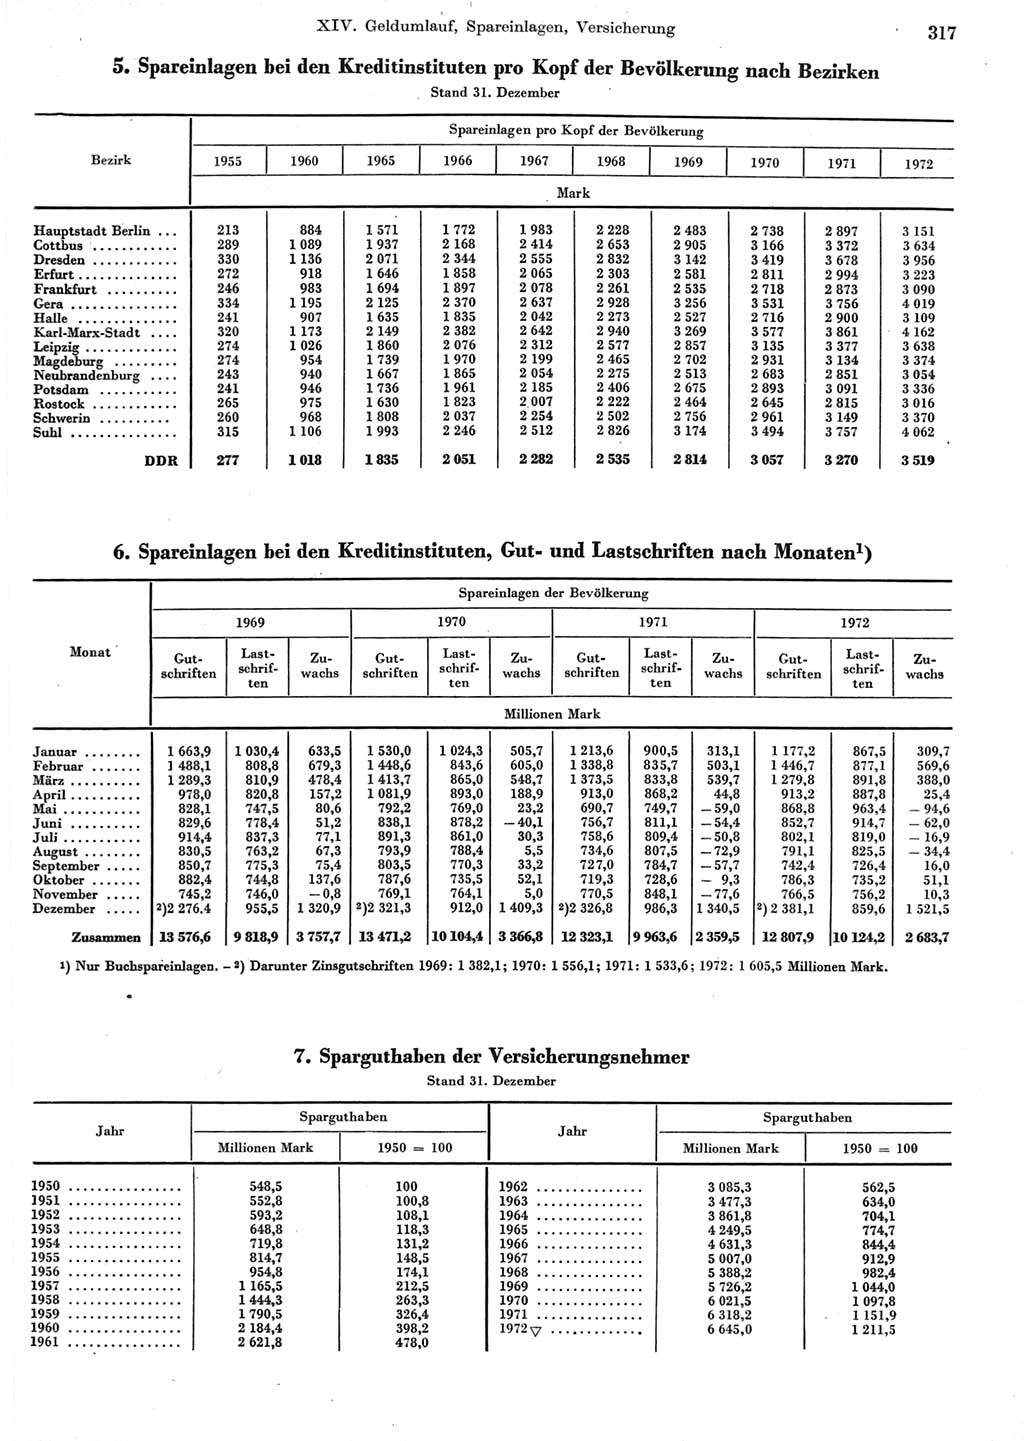 Statistisches Jahrbuch der Deutschen Demokratischen Republik (DDR) 1973, Seite 317 (Stat. Jb. DDR 1973, S. 317)